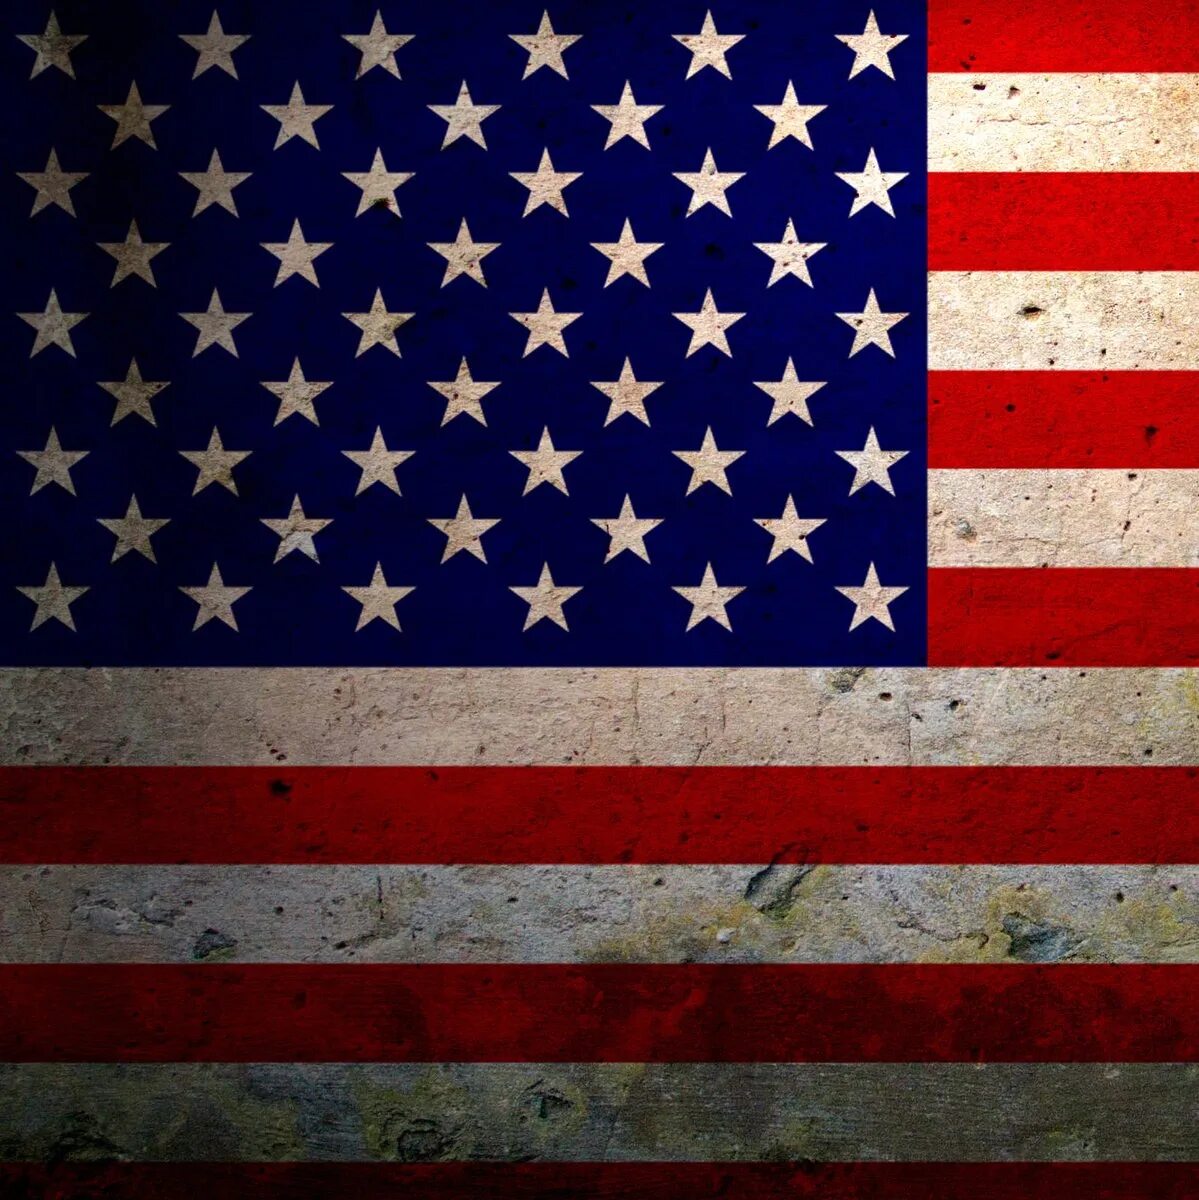 Vk americans. Аватар флаг США. Флаг Америки 200 200. Фото на фоне американского флага. Обложка для ВК Америка.